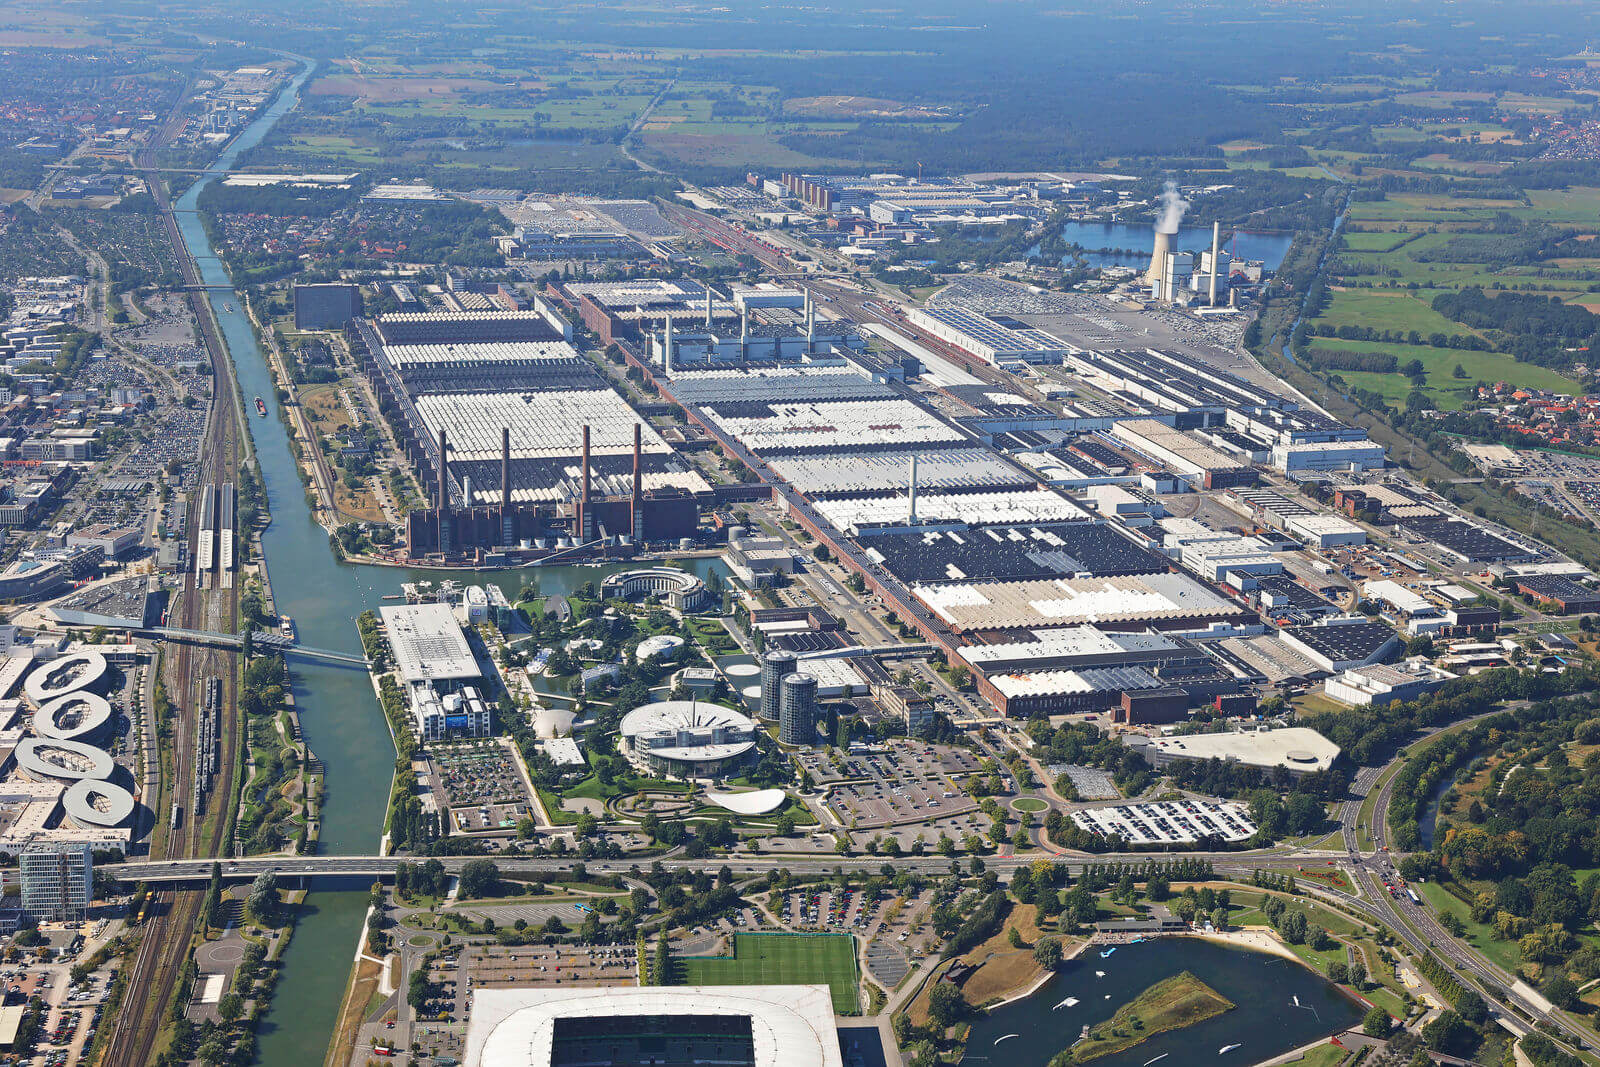 大众汽车投资近 5 亿美元改造沃尔夫斯堡电动汽车工厂